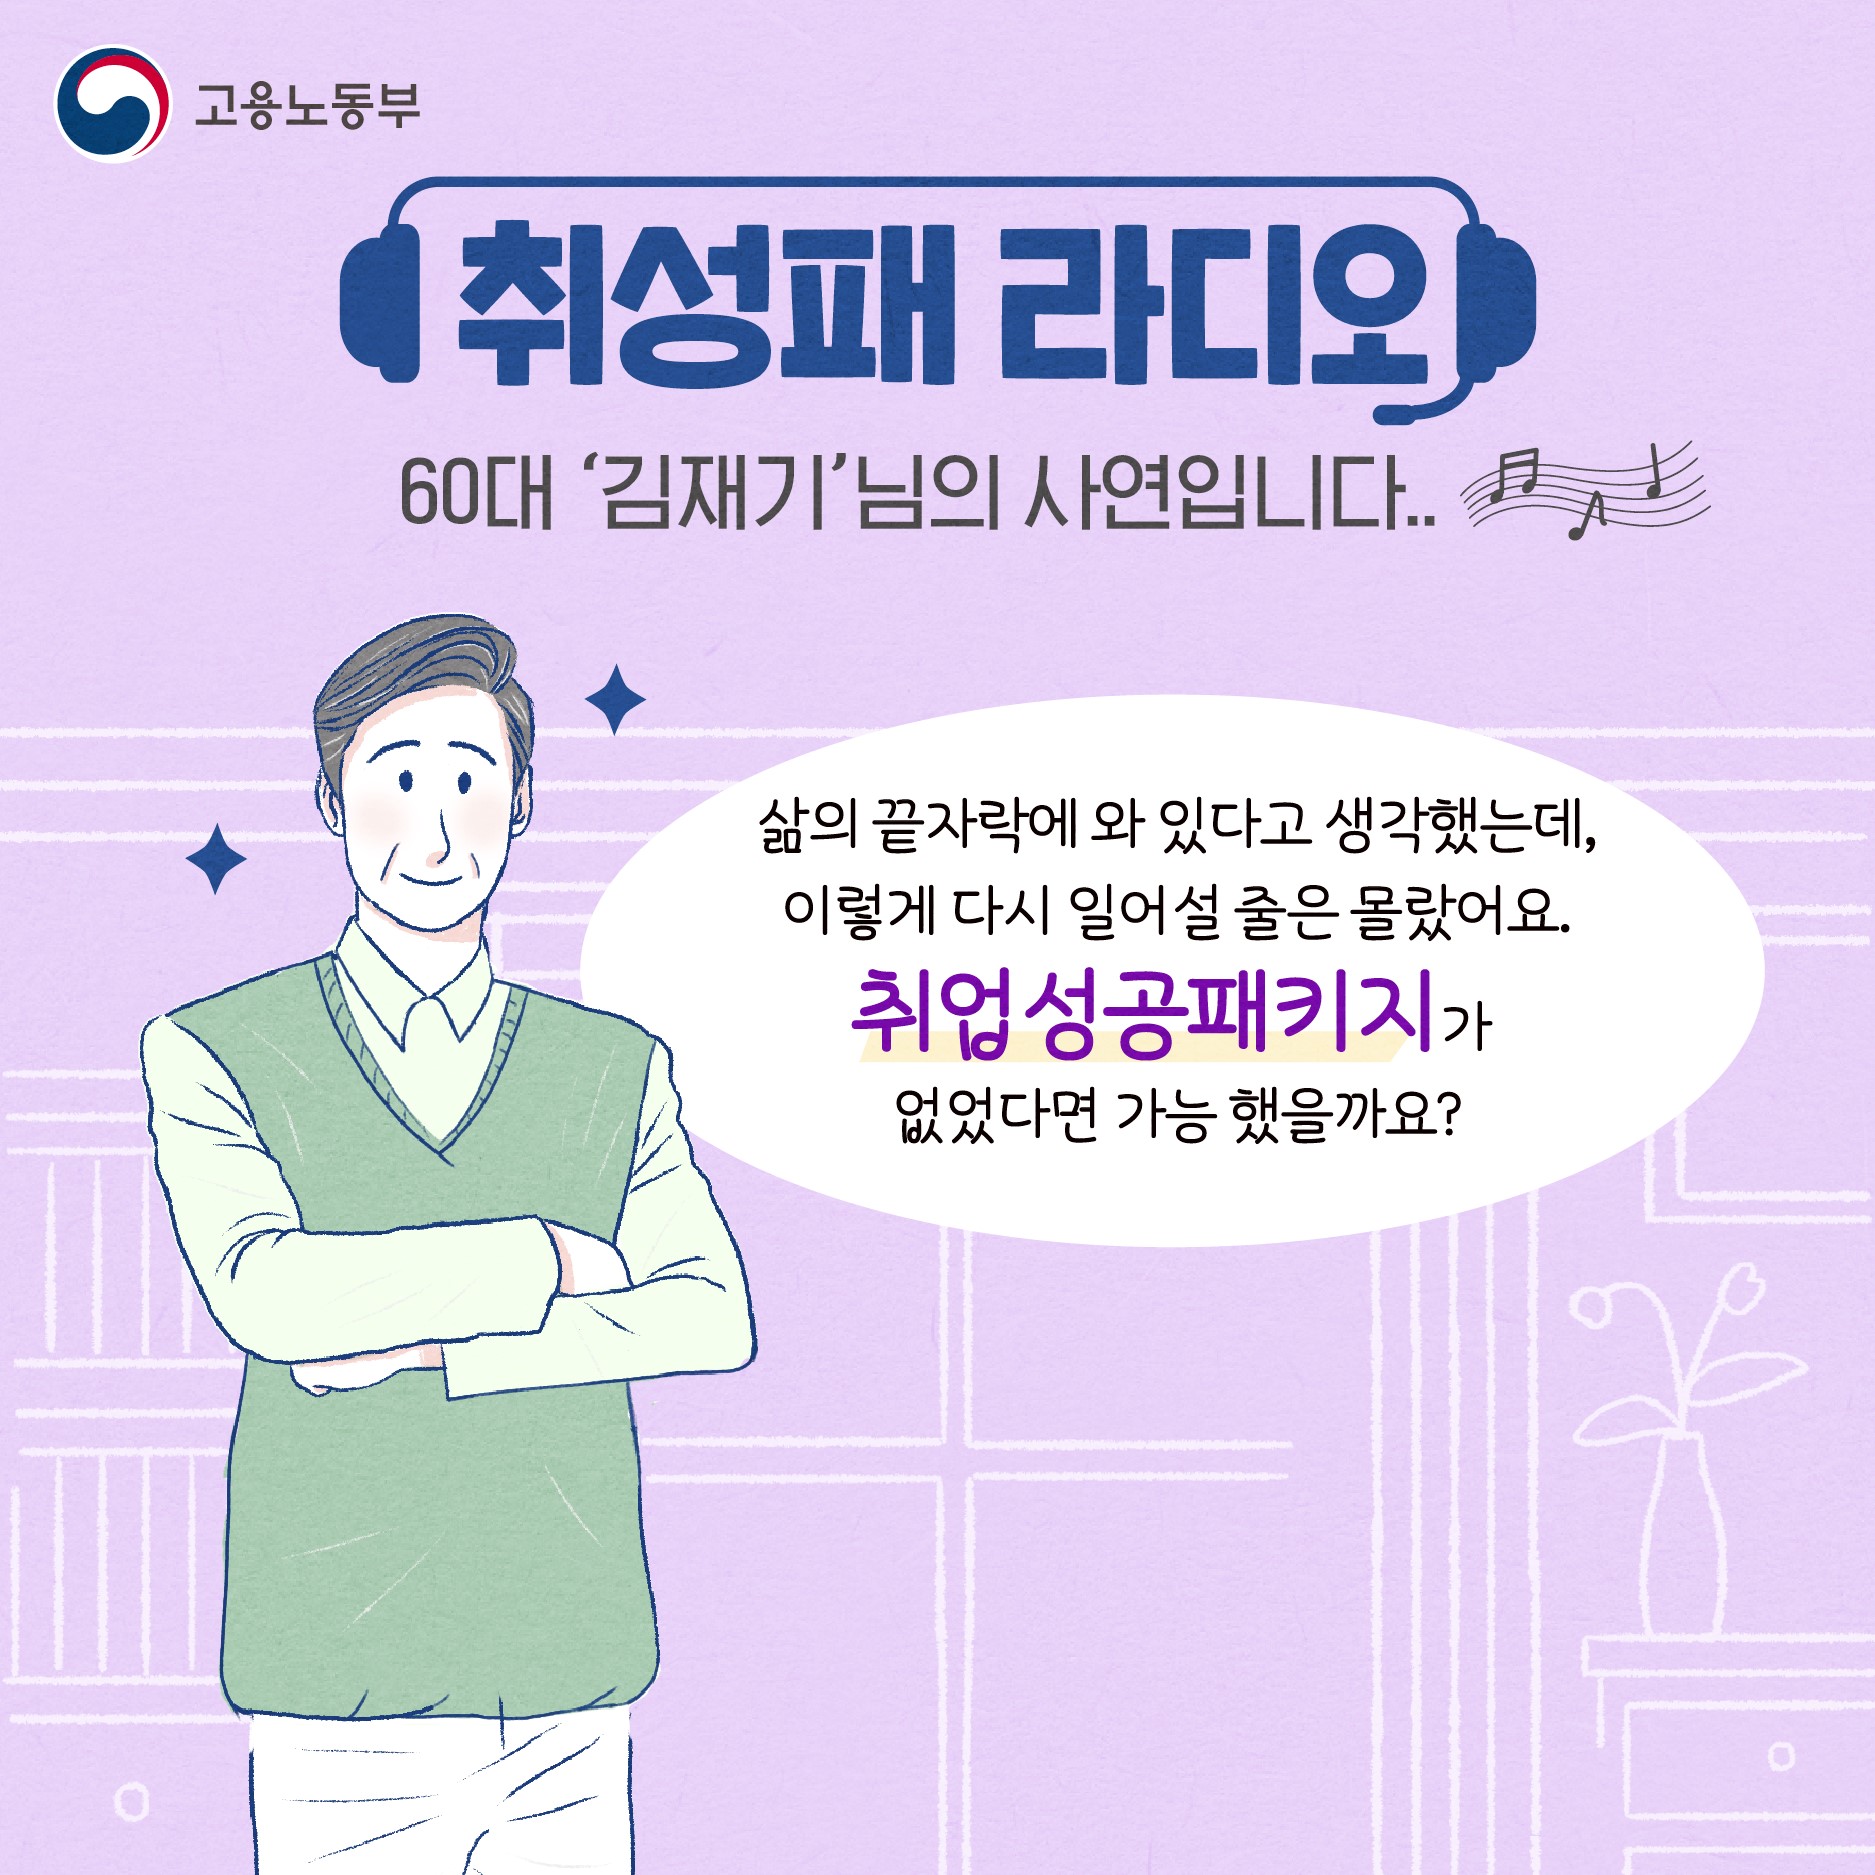 [취성패 라디오] 60대 '김재기'님의 사연입니다.